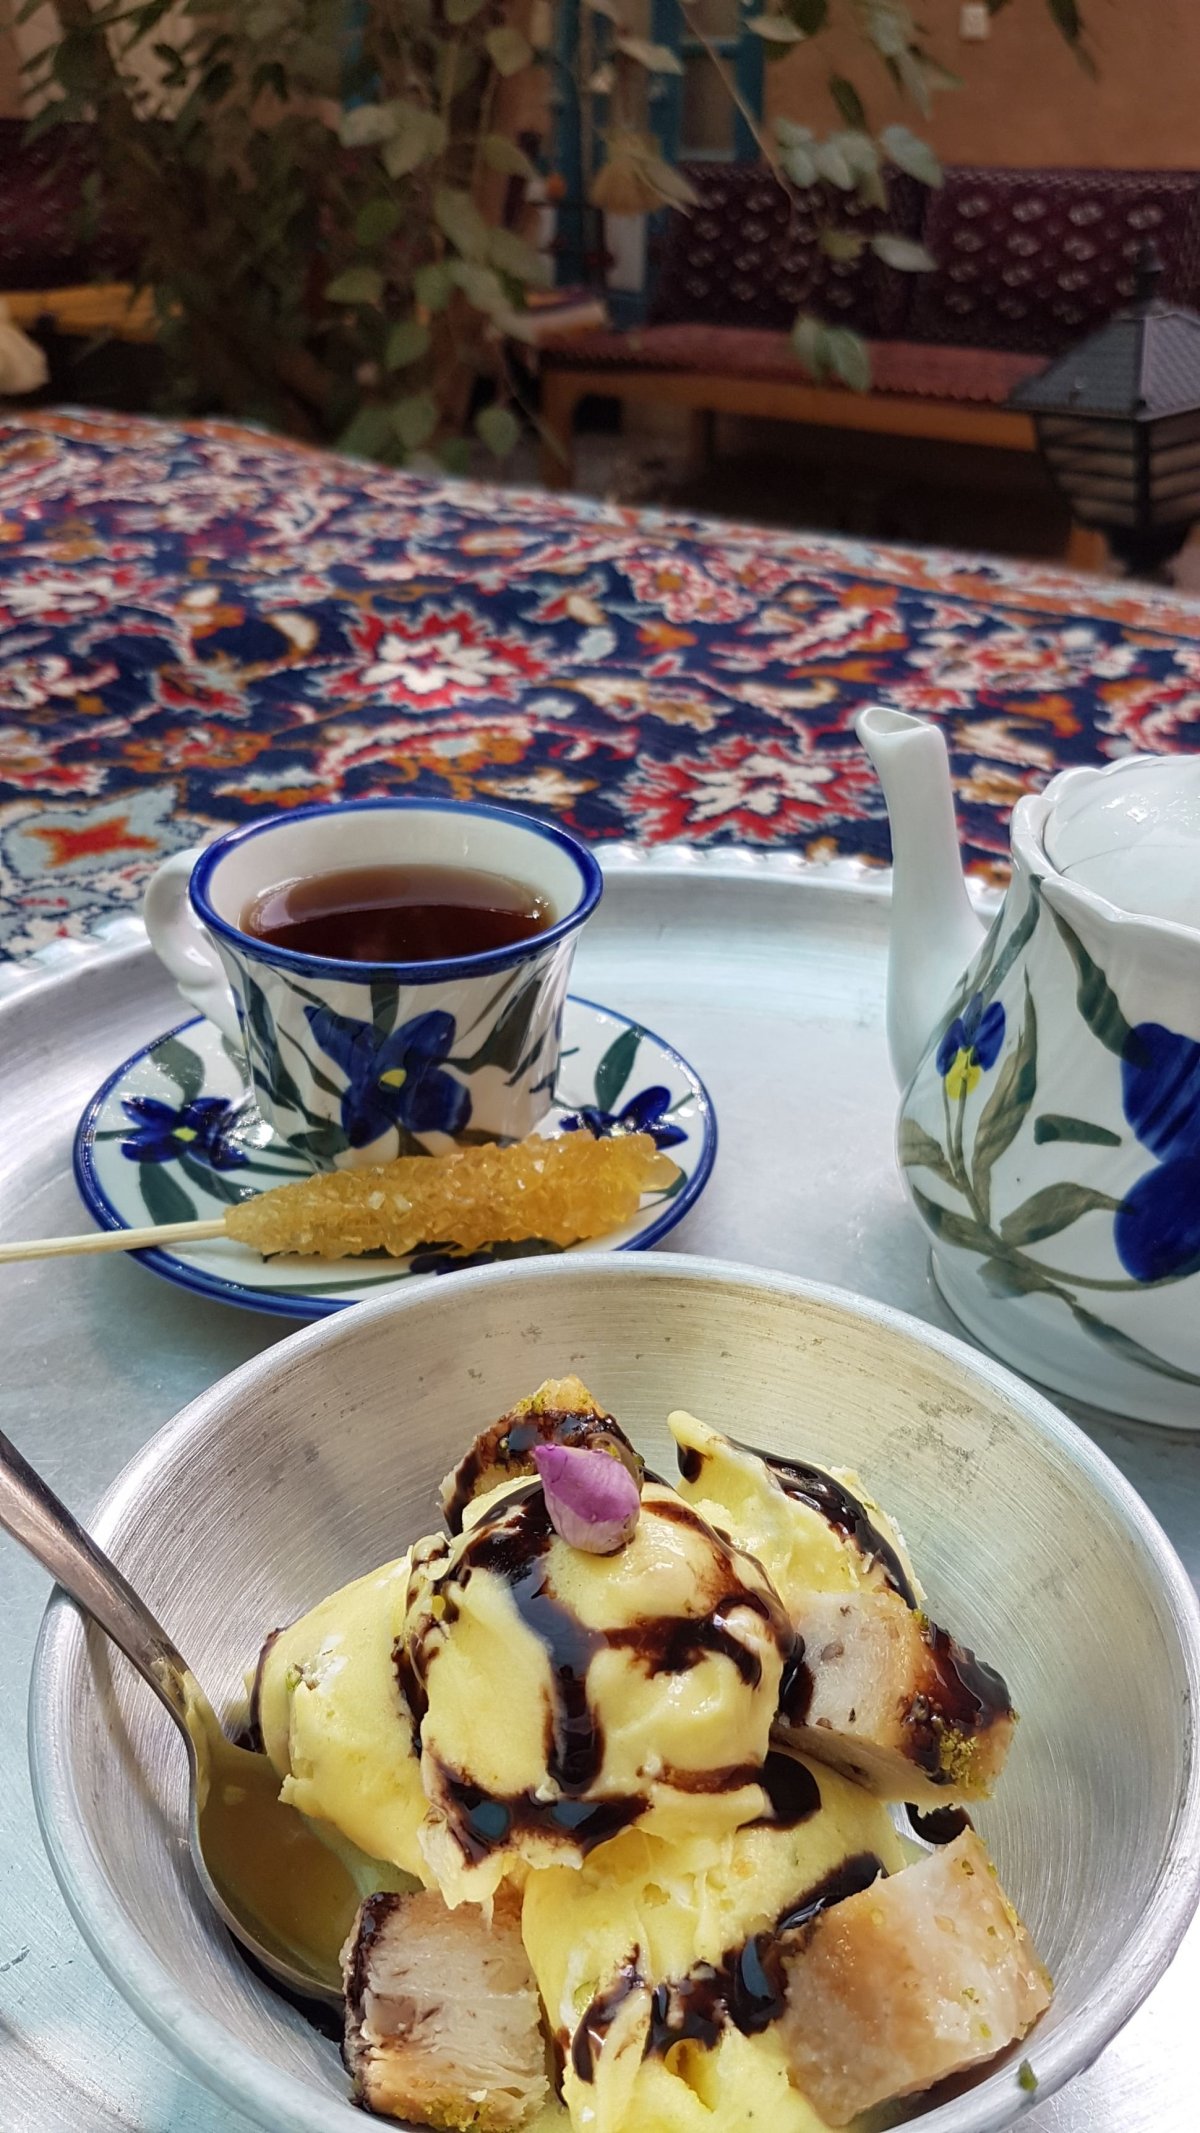 Šafránový čaj se šafránovým cukrem a šafránovou zmrzlinou